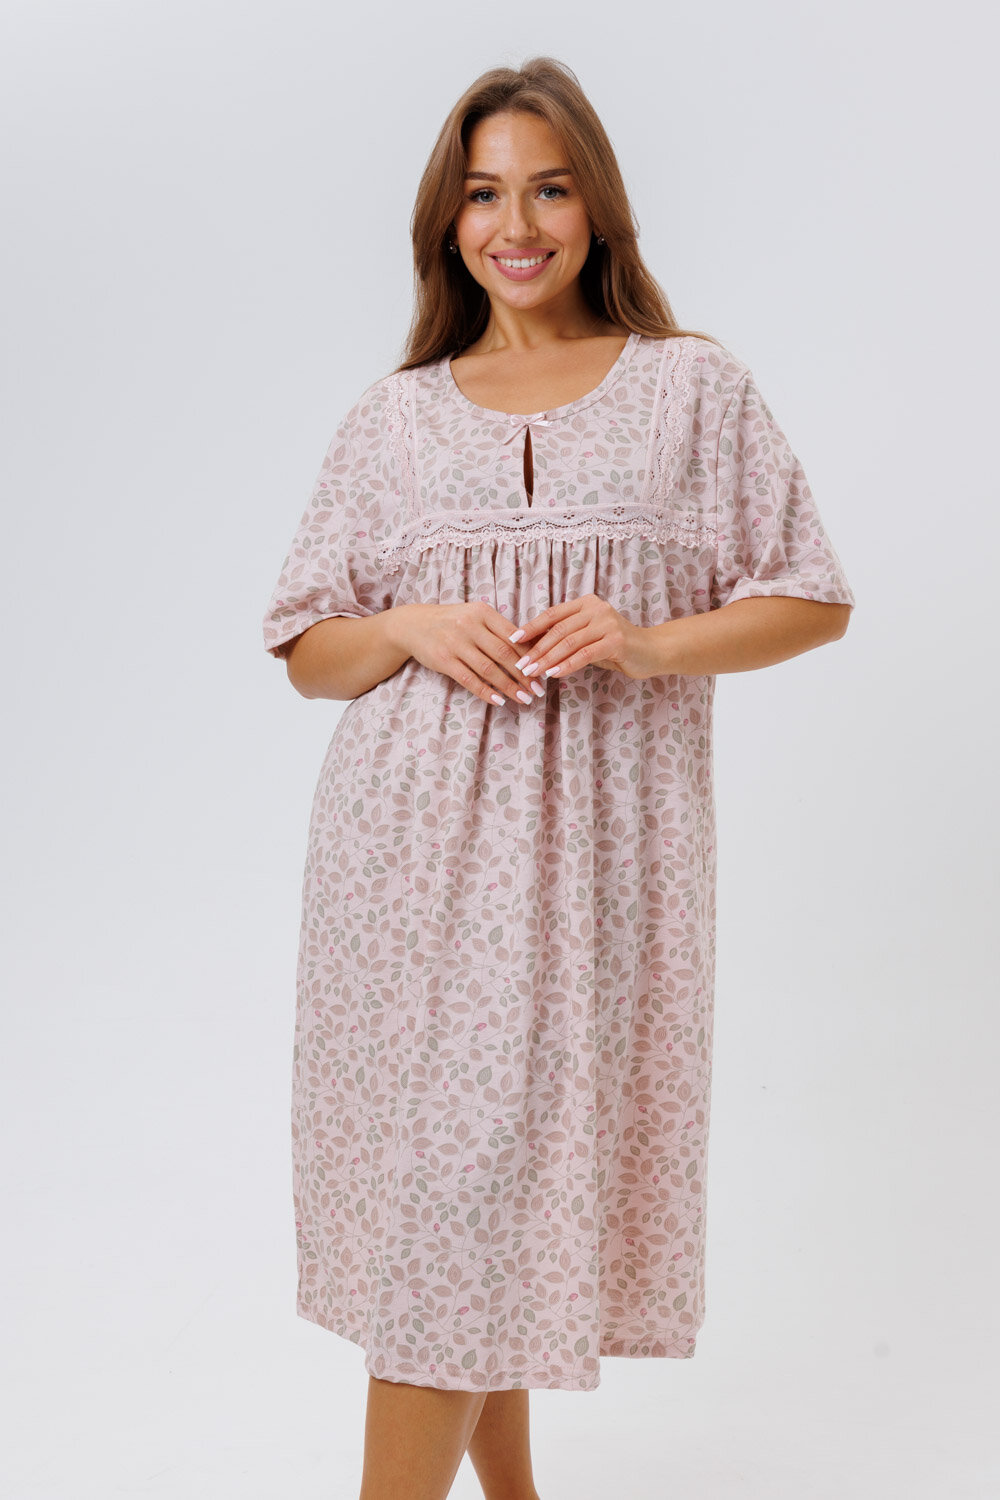 Сорочка Modellini, размер 58, розовый, бежевый - фотография № 3